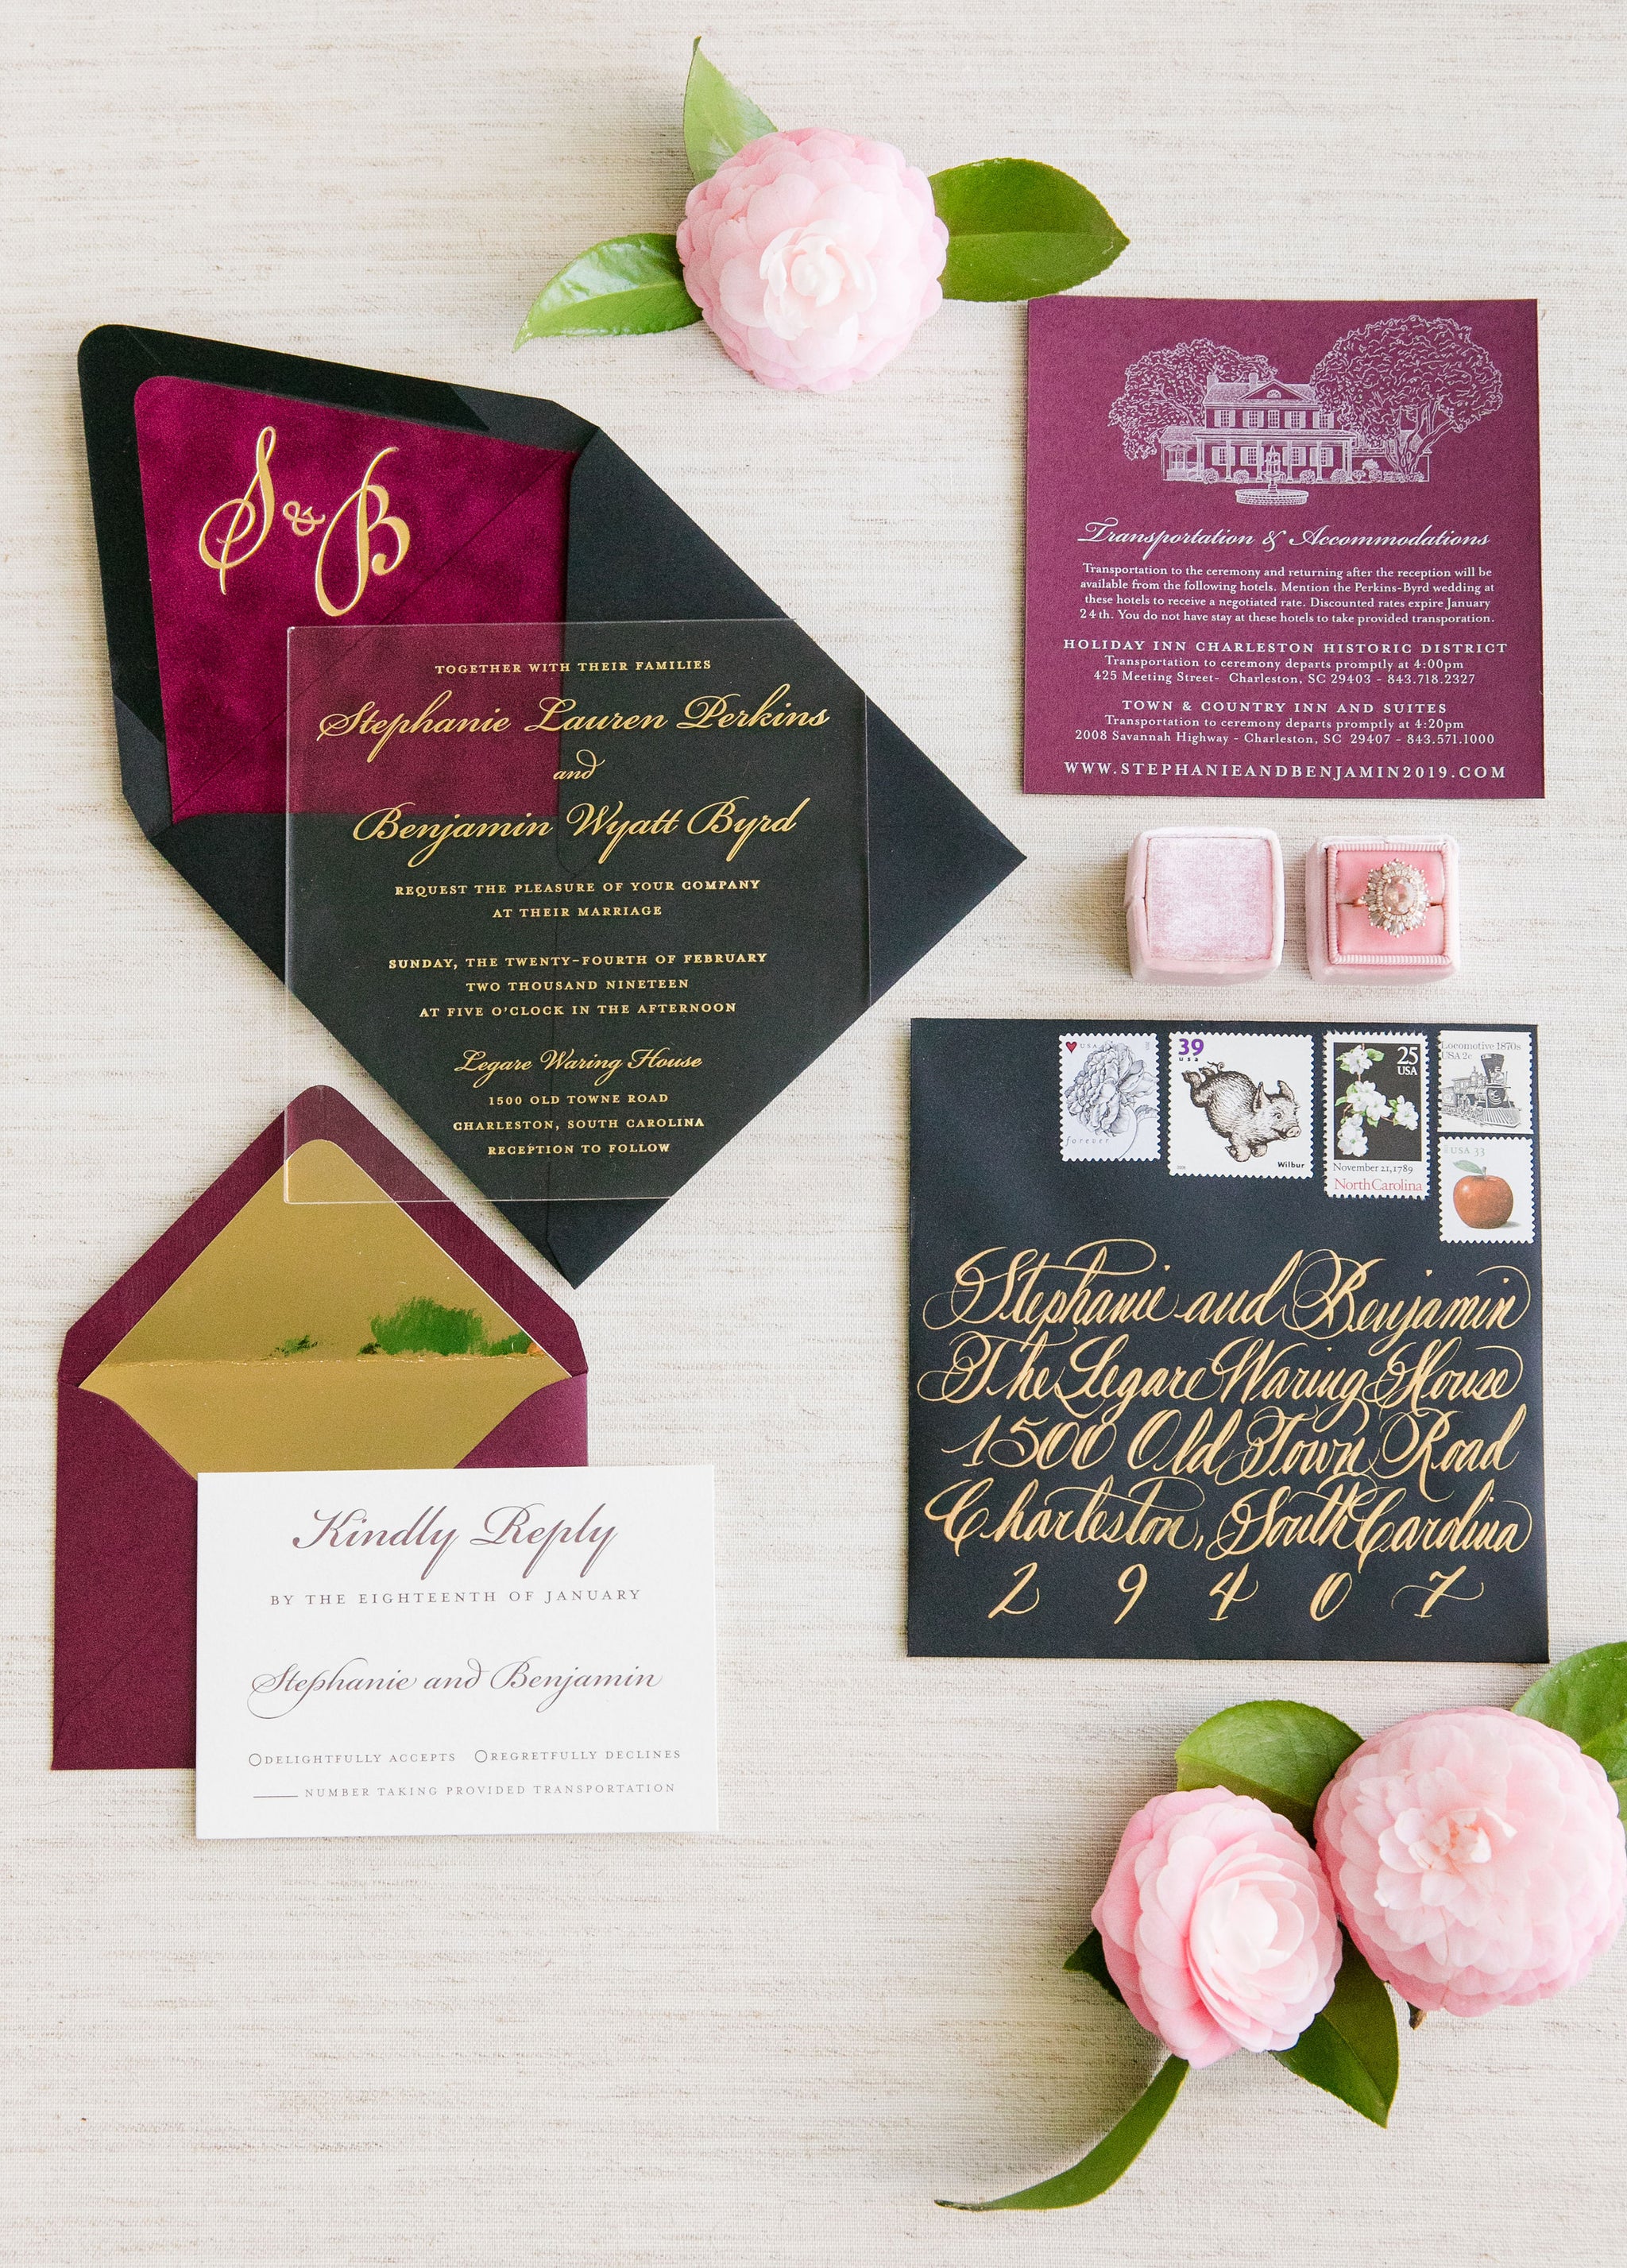 Acrylic and Gold Foil Wedding Invitation - Scotti Cline Designs